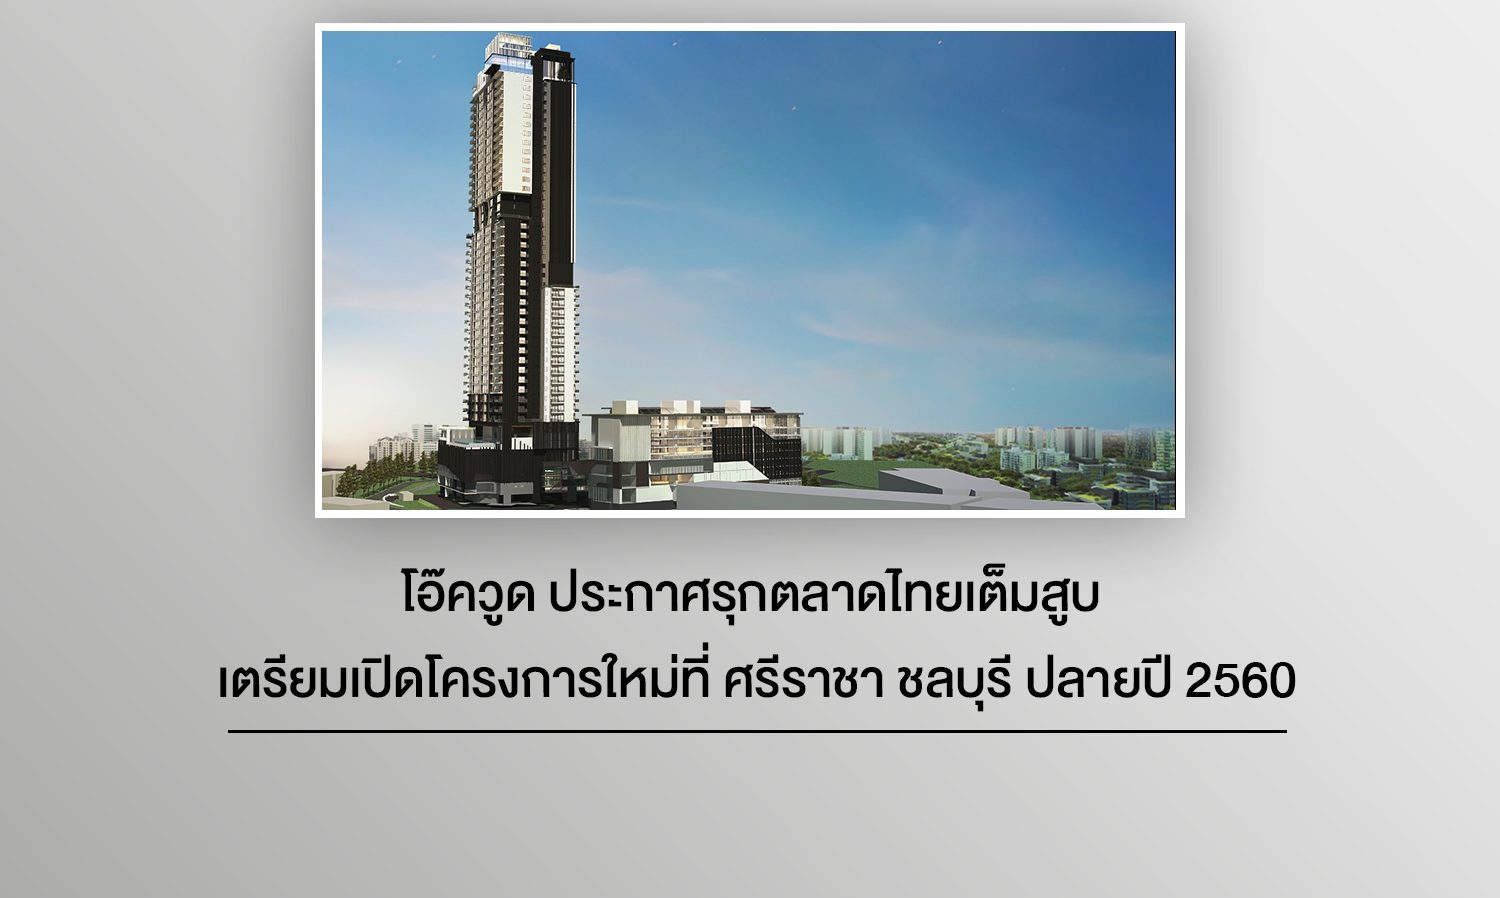 โอ๊ควูด ประกาศรุกตลาดไทยเต็มสูบ เตรียมเปิดโครงการใหม่ที่ ศรีราชา ชลบุรี ปลายปี 2560